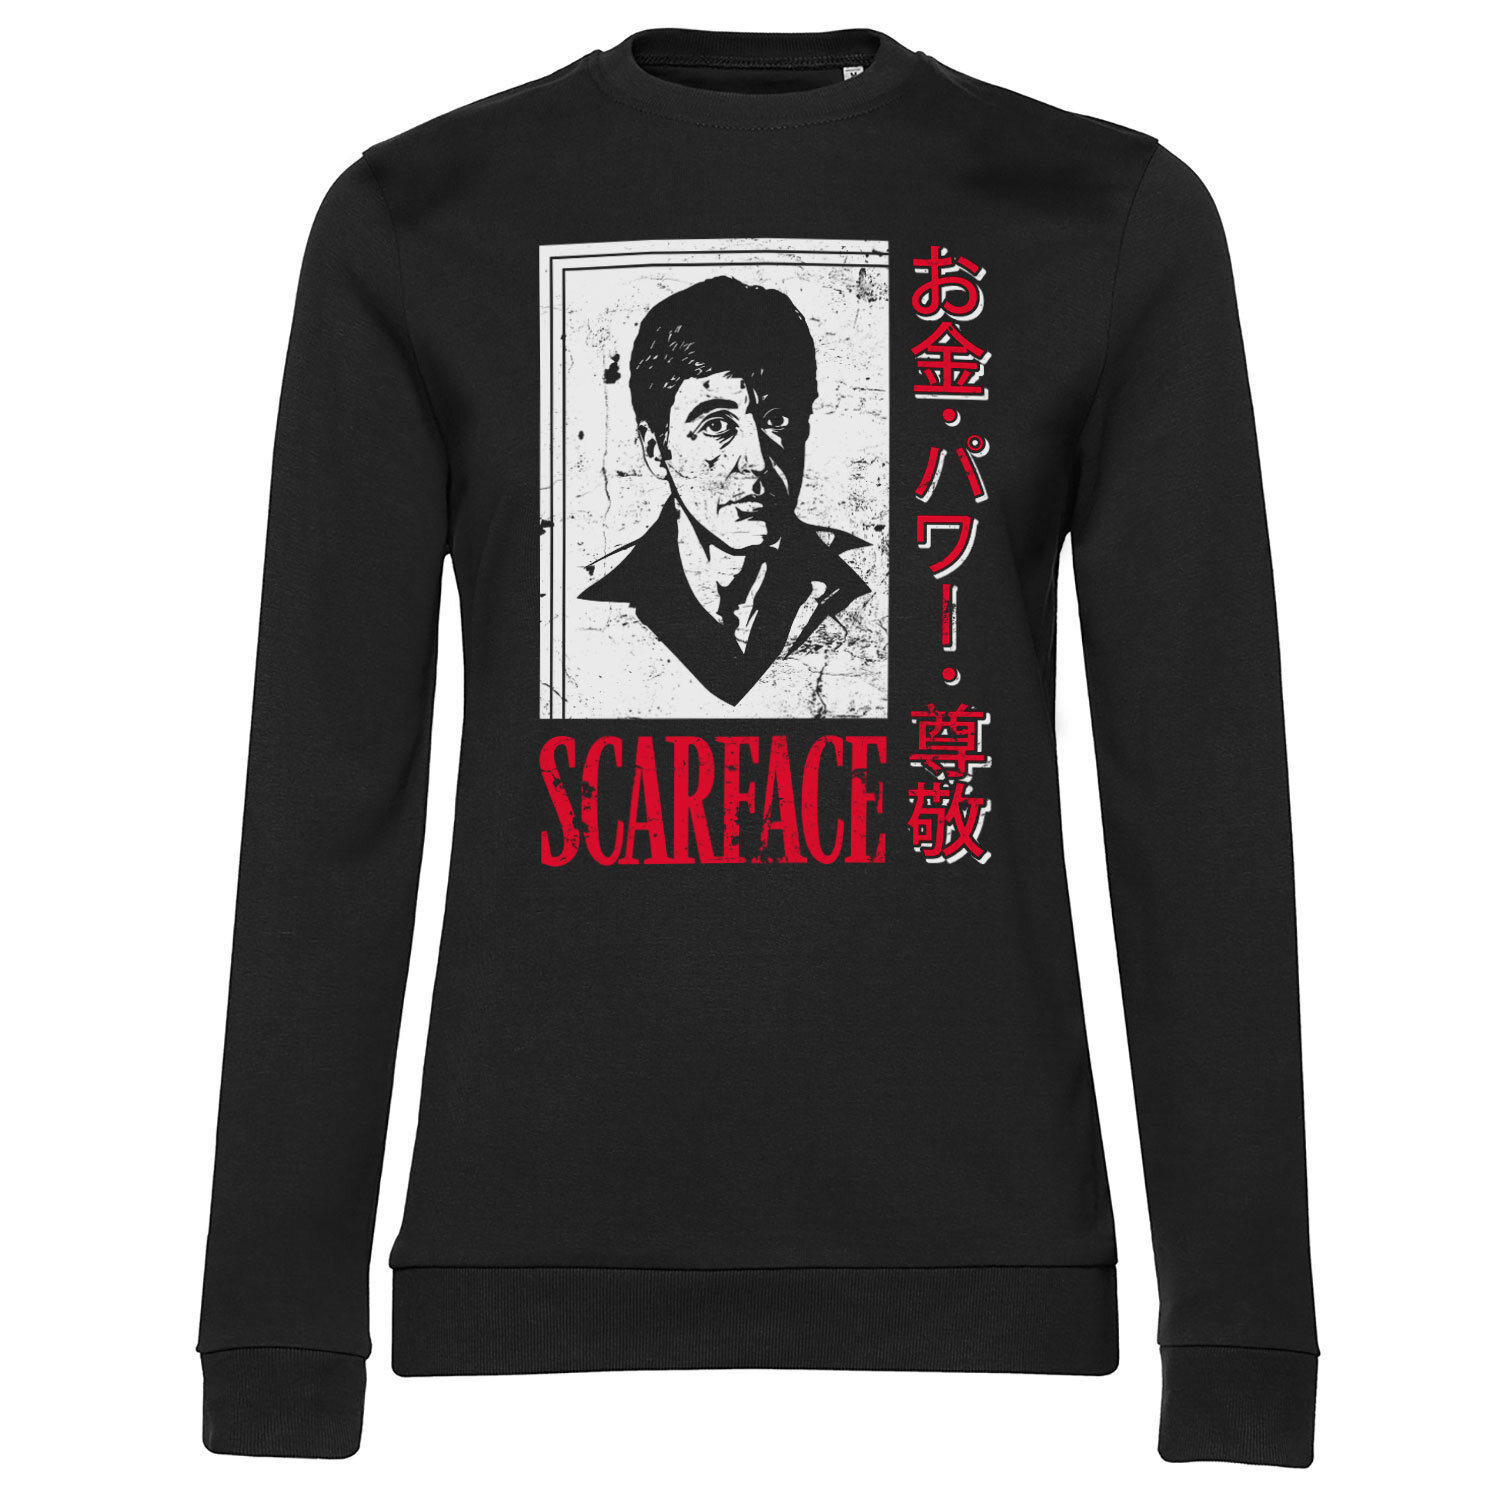 Scarface - Japanese Girly Sweatshirt